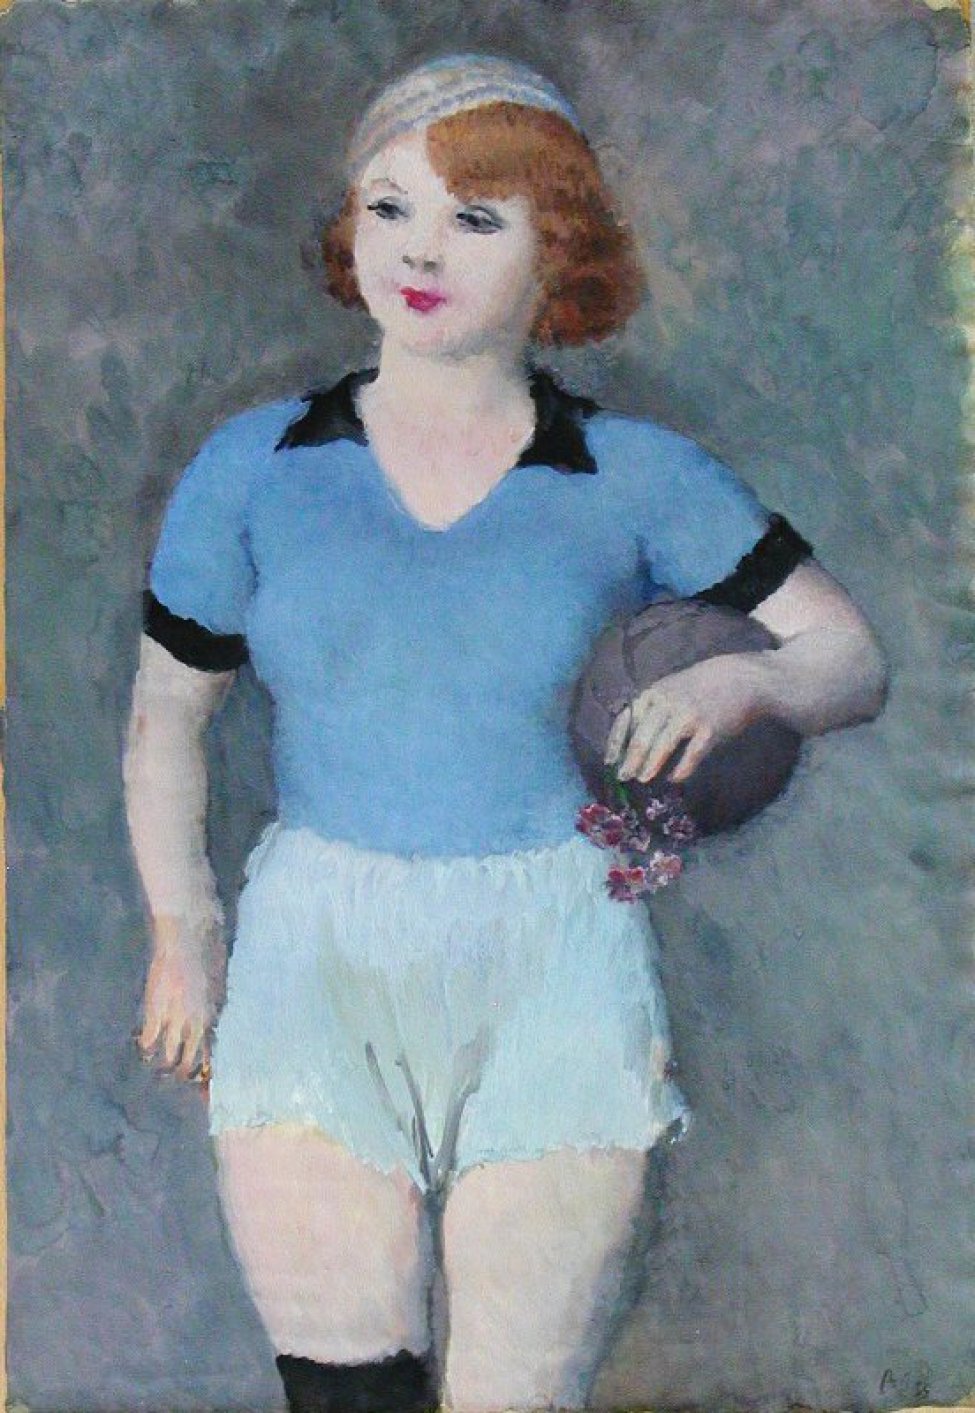 Дано поколенное изображение молодой девушки с мячом подмышкой и цветком в левой руке. Волосы короткие, пышные, рыжие, голубой берет, голубая с черной отделкой кофточка, светло-голубые трусы. На правом колене - черная повязка.